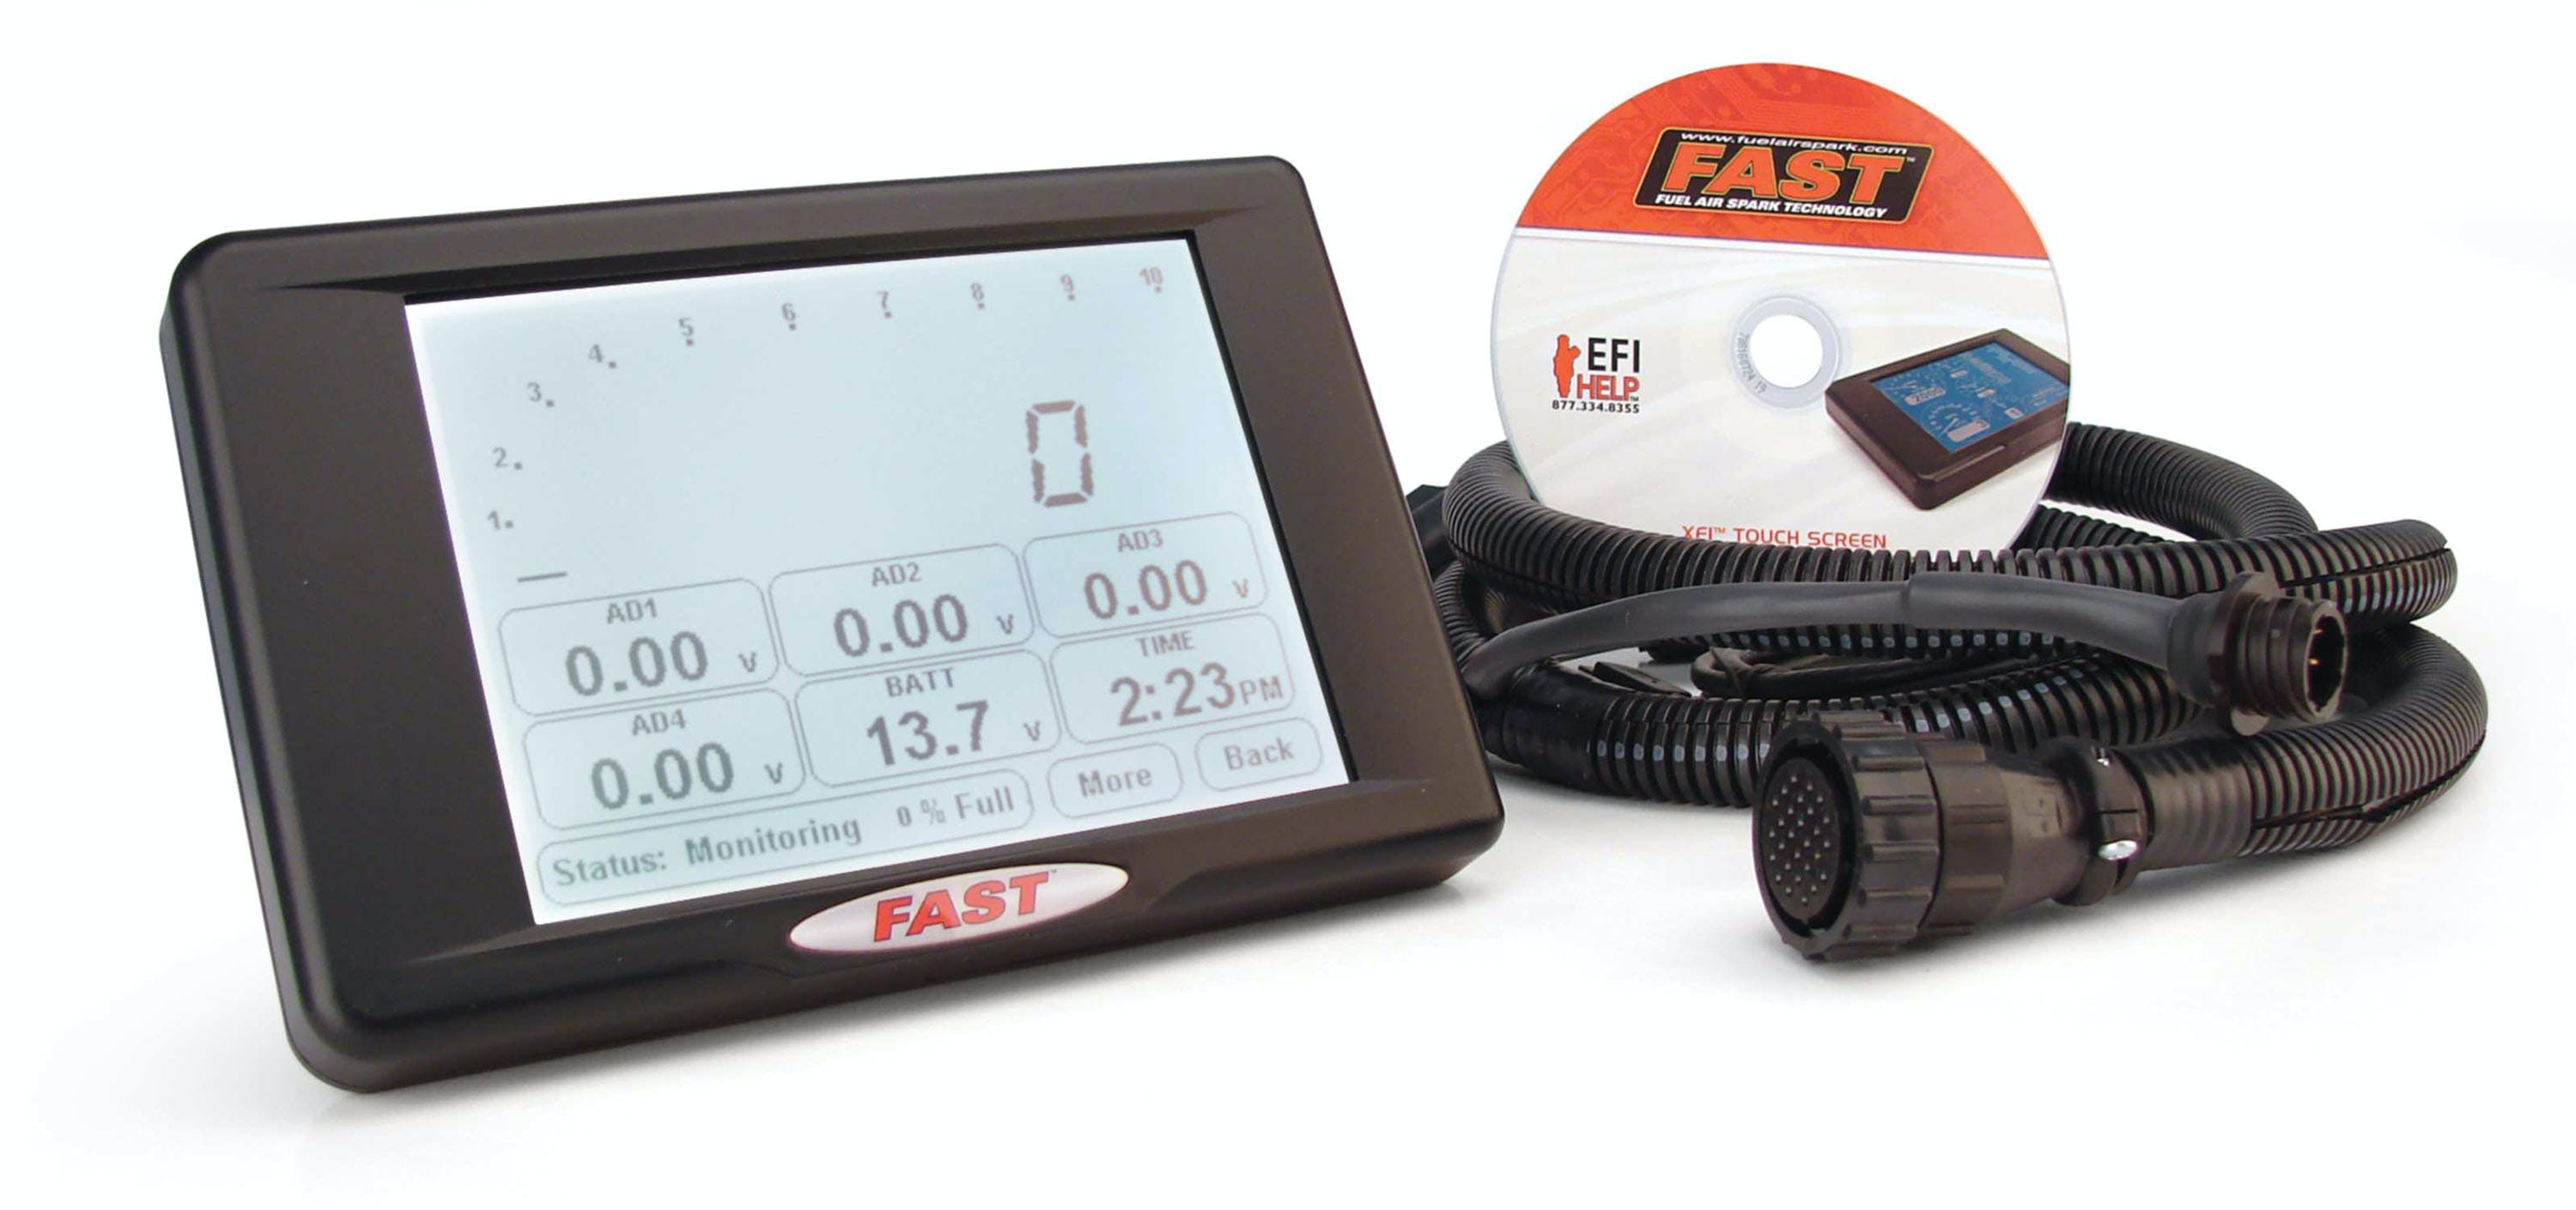 FAST - Fuel Air Spark Technology 301417 XFI Touchscreen Dash/Data Logger